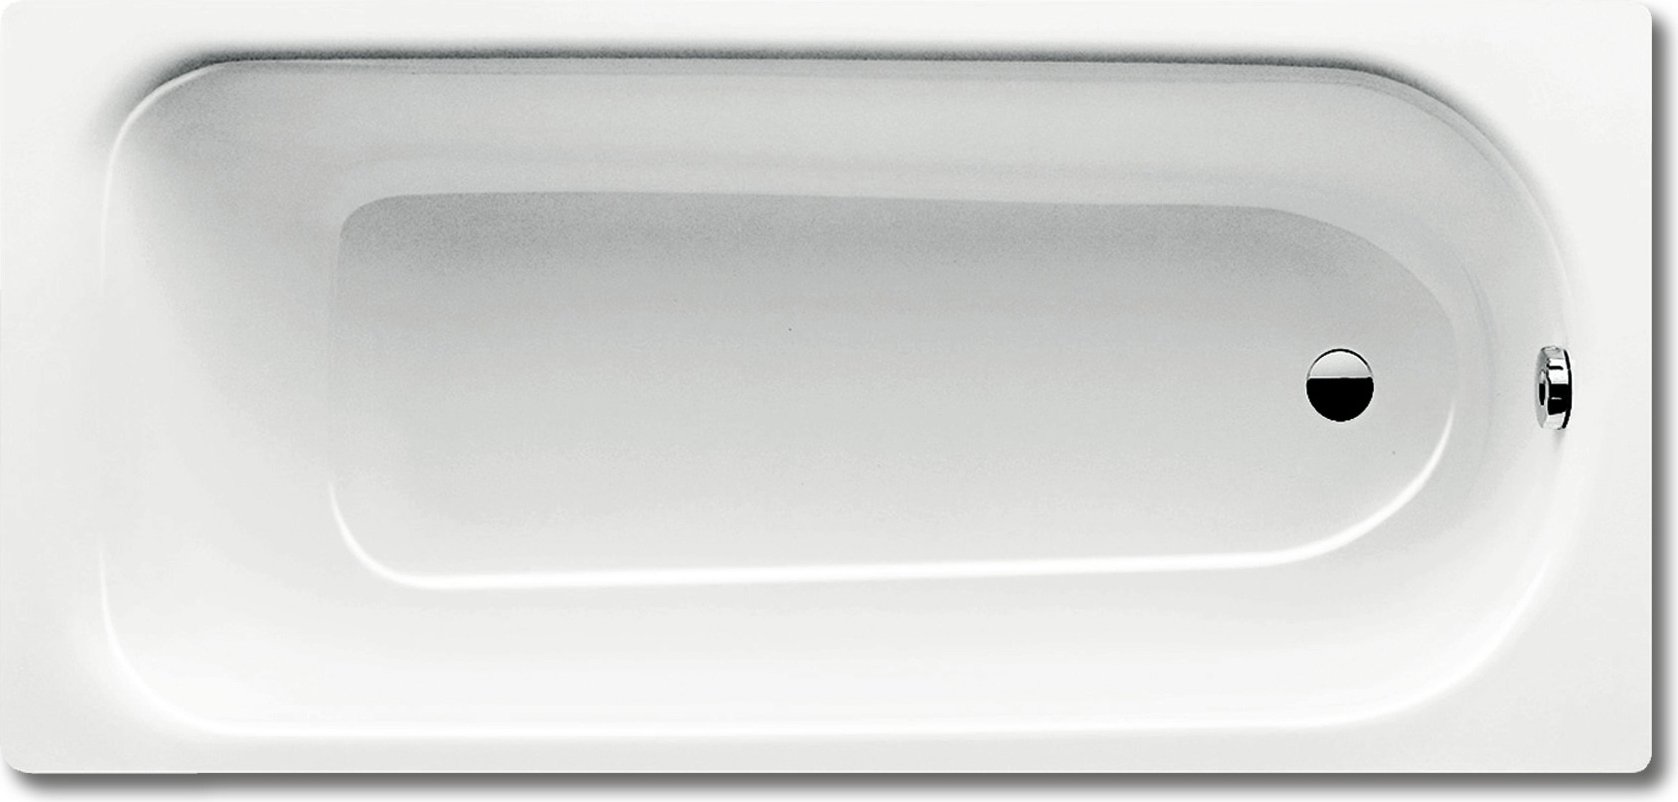 Стальная ванна Kaldewei Advantage Saniform Plus 375-1 с покрытием Anti-Slip 180x80, белый, сталь  - купить со скидкой